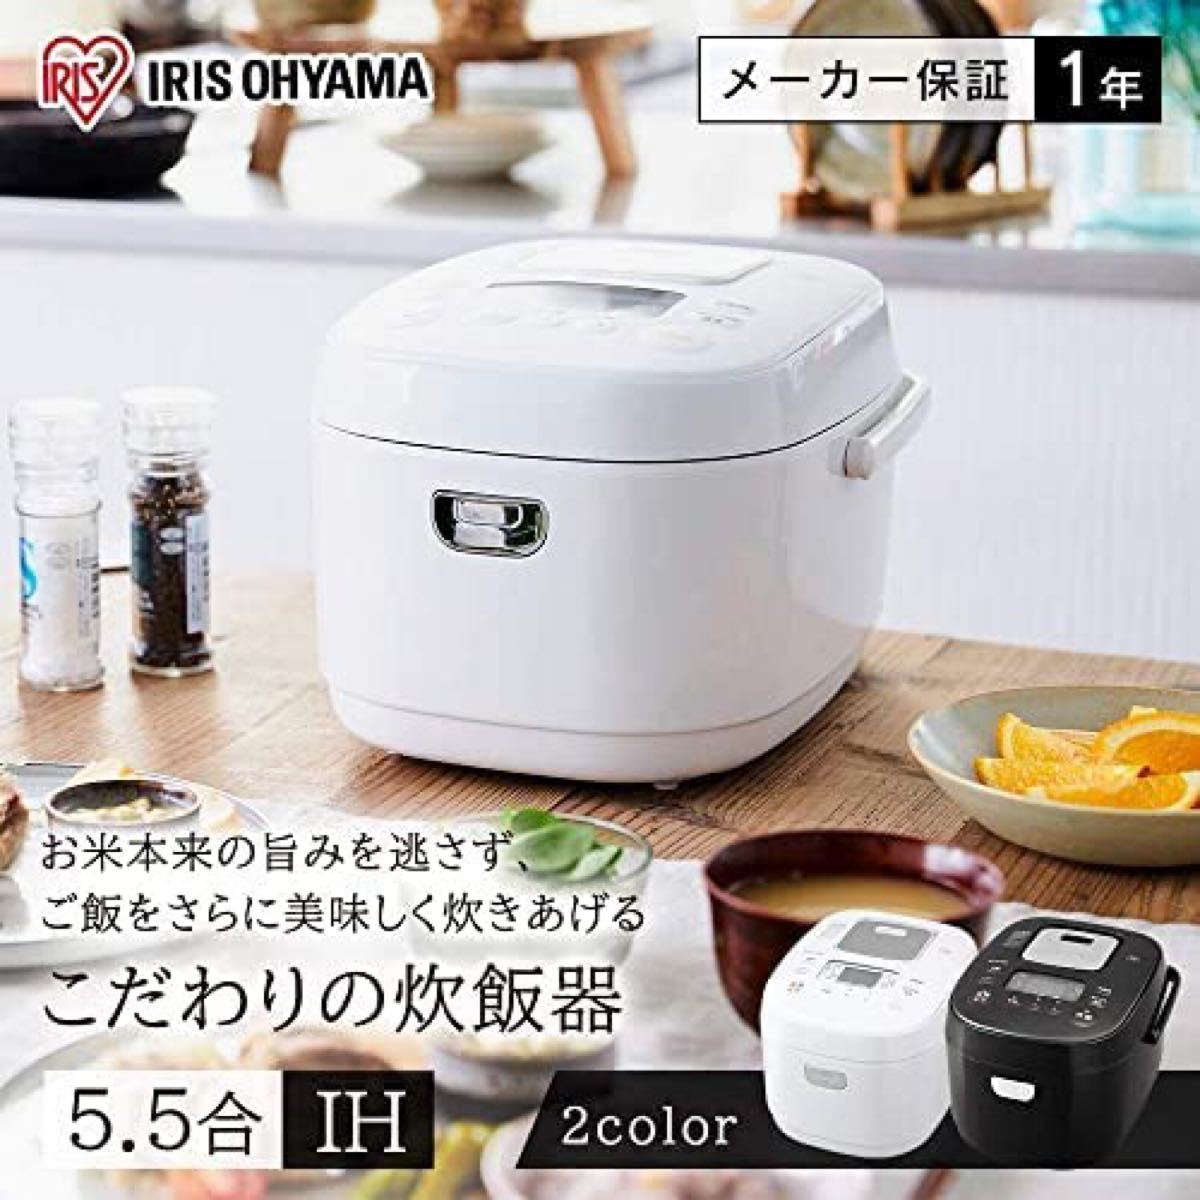 アイリスオーヤマ 炊飯器 5.5合 IH式40銘柄 ホワイト RC-IK50-W